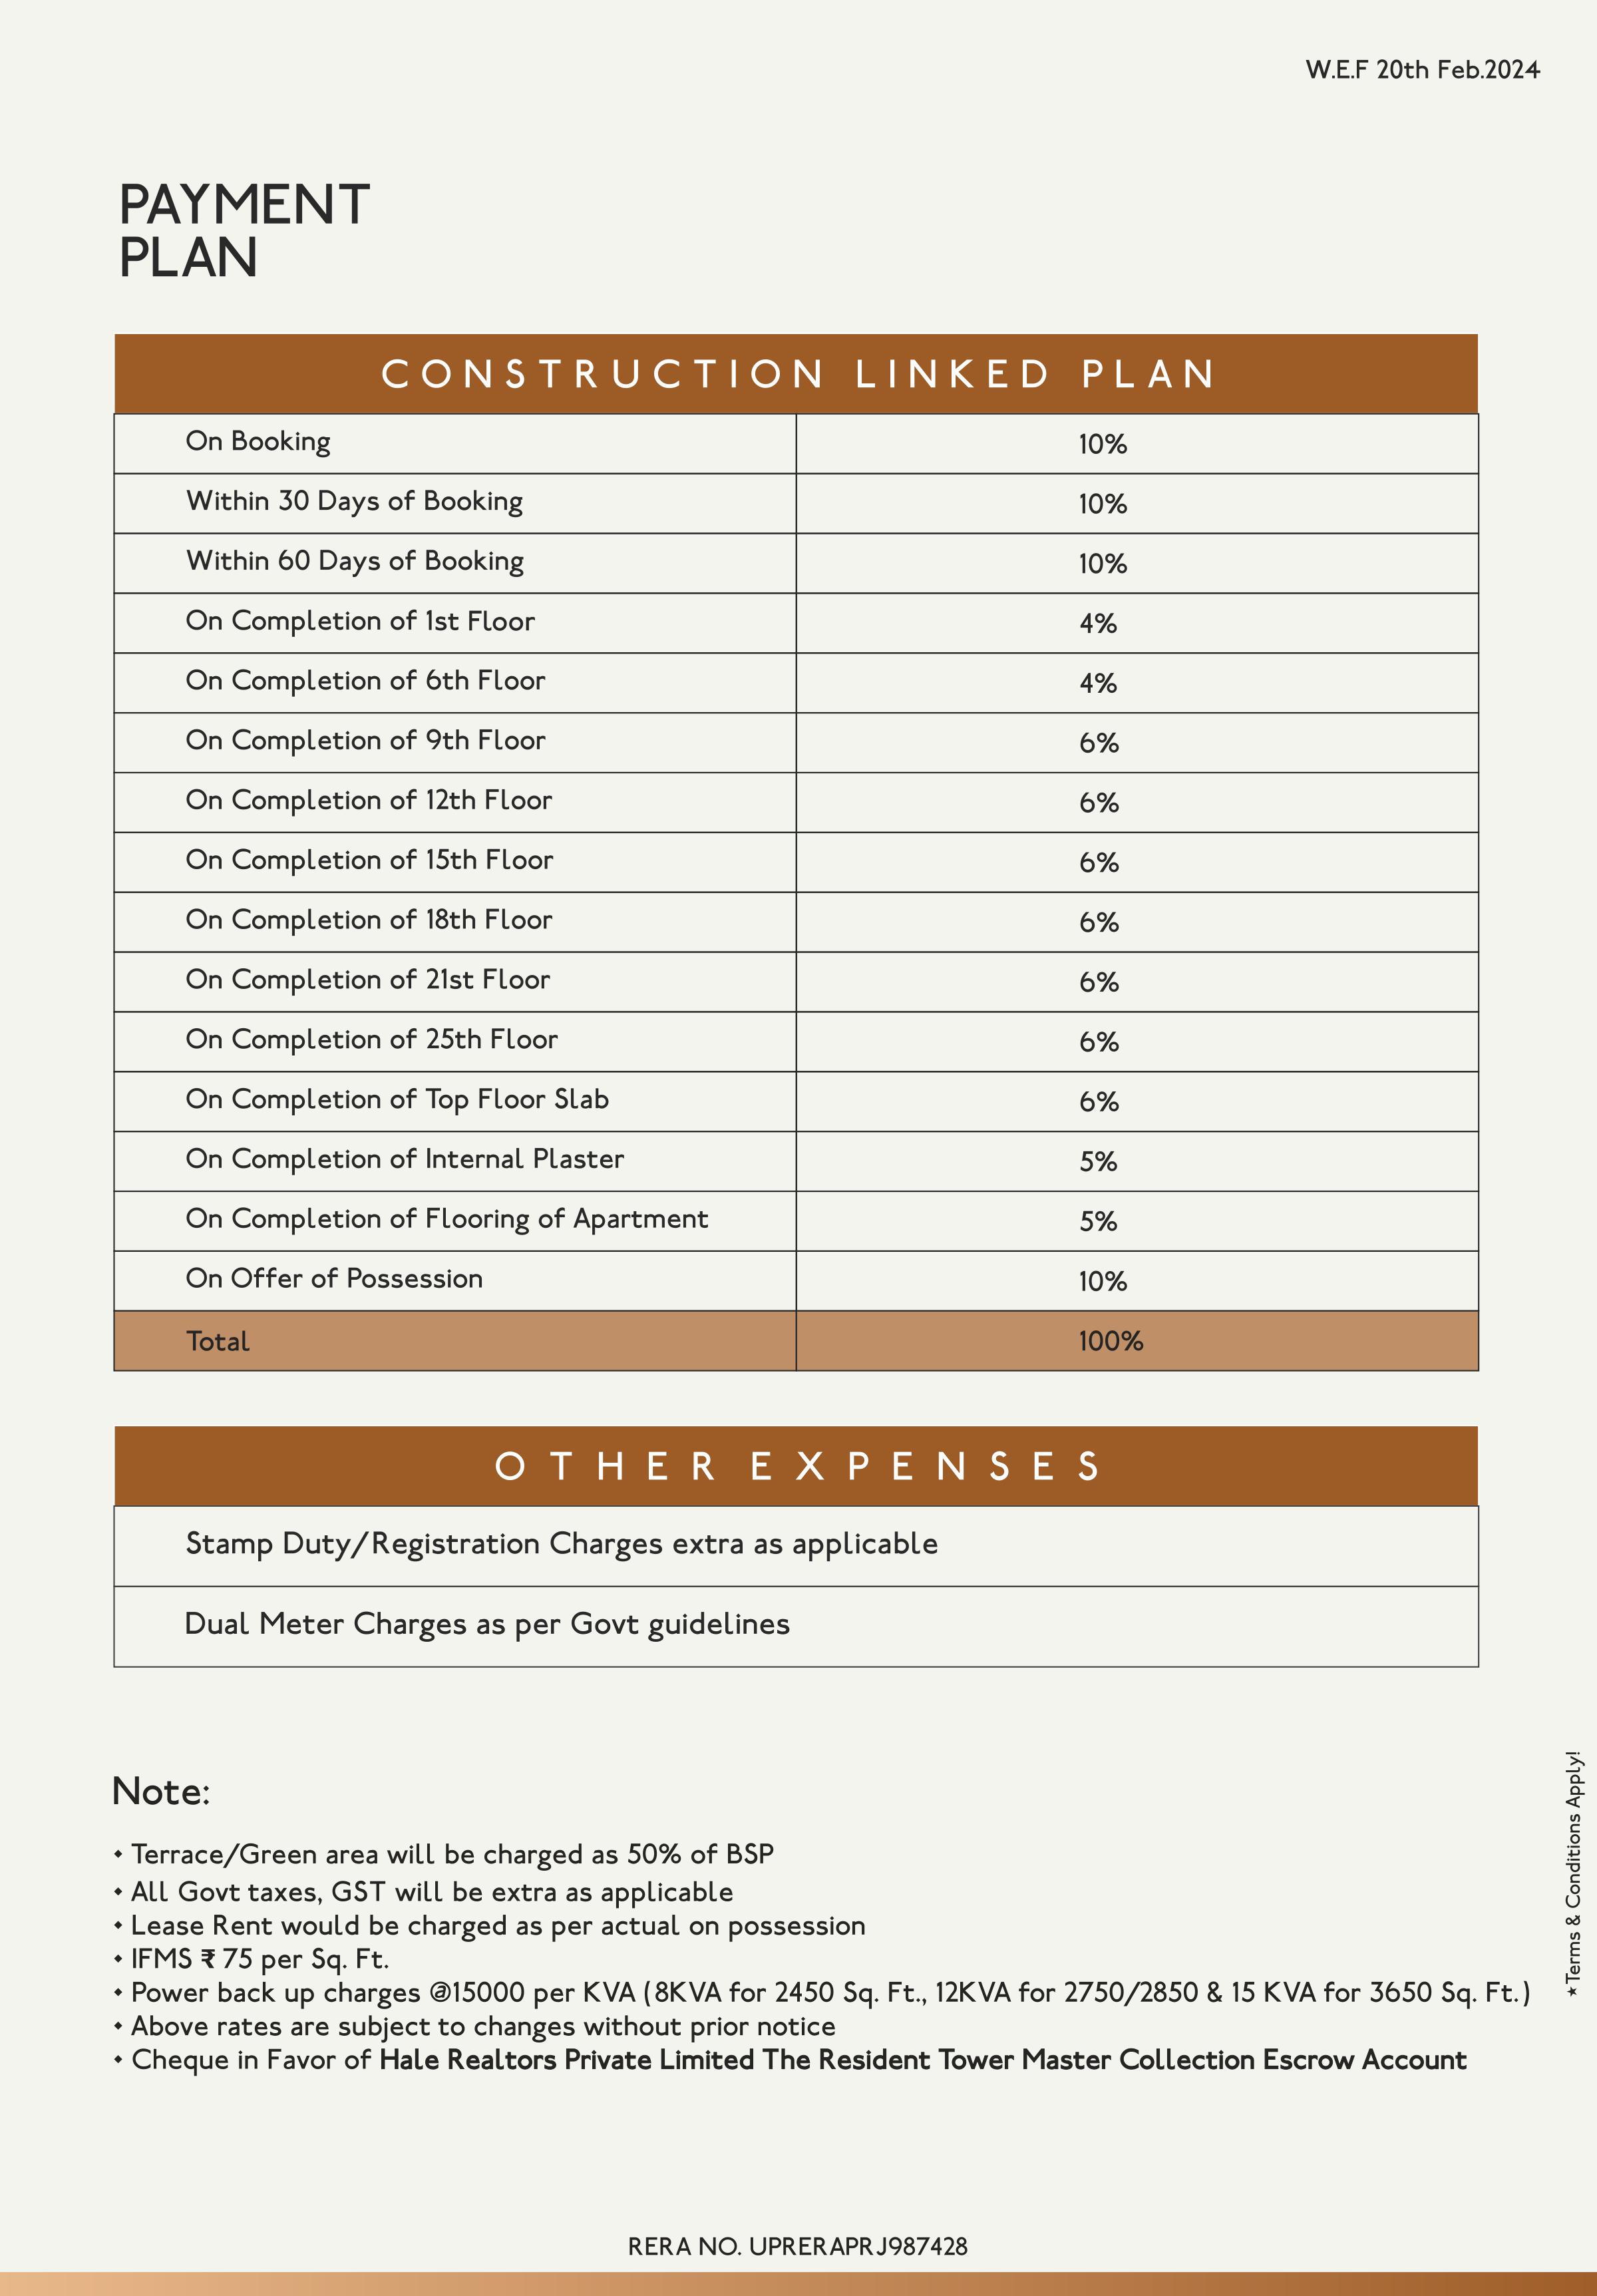 TRT Noida Payment Plan